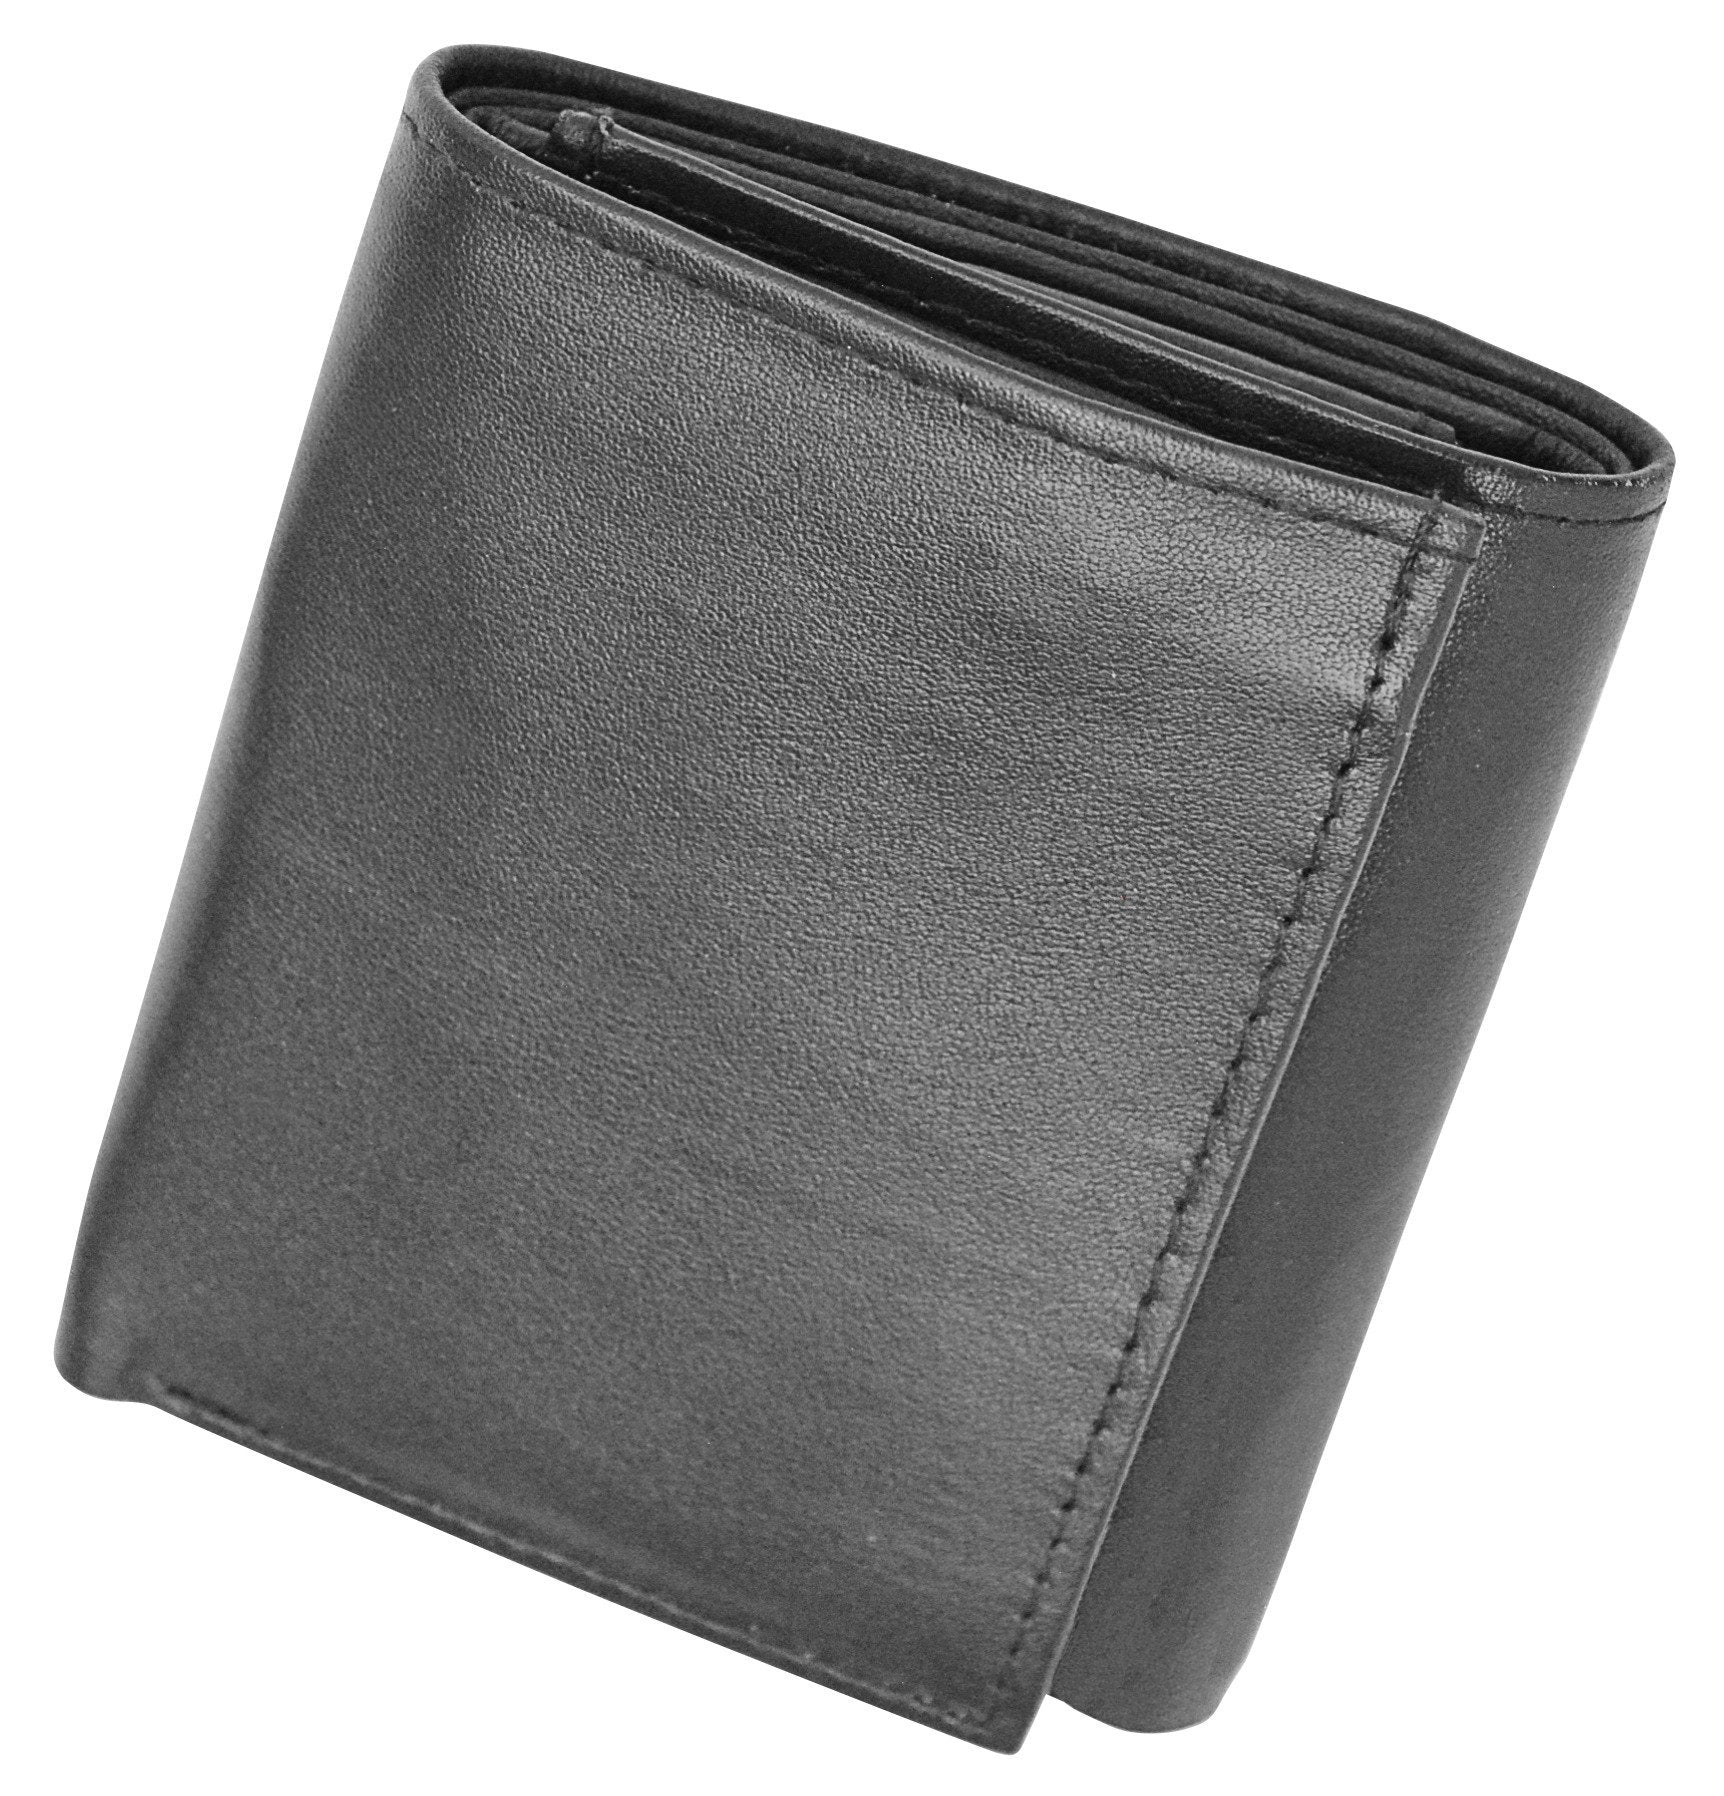 Genuine Soft Leather Tri-fold Wallet For Men - Black ...